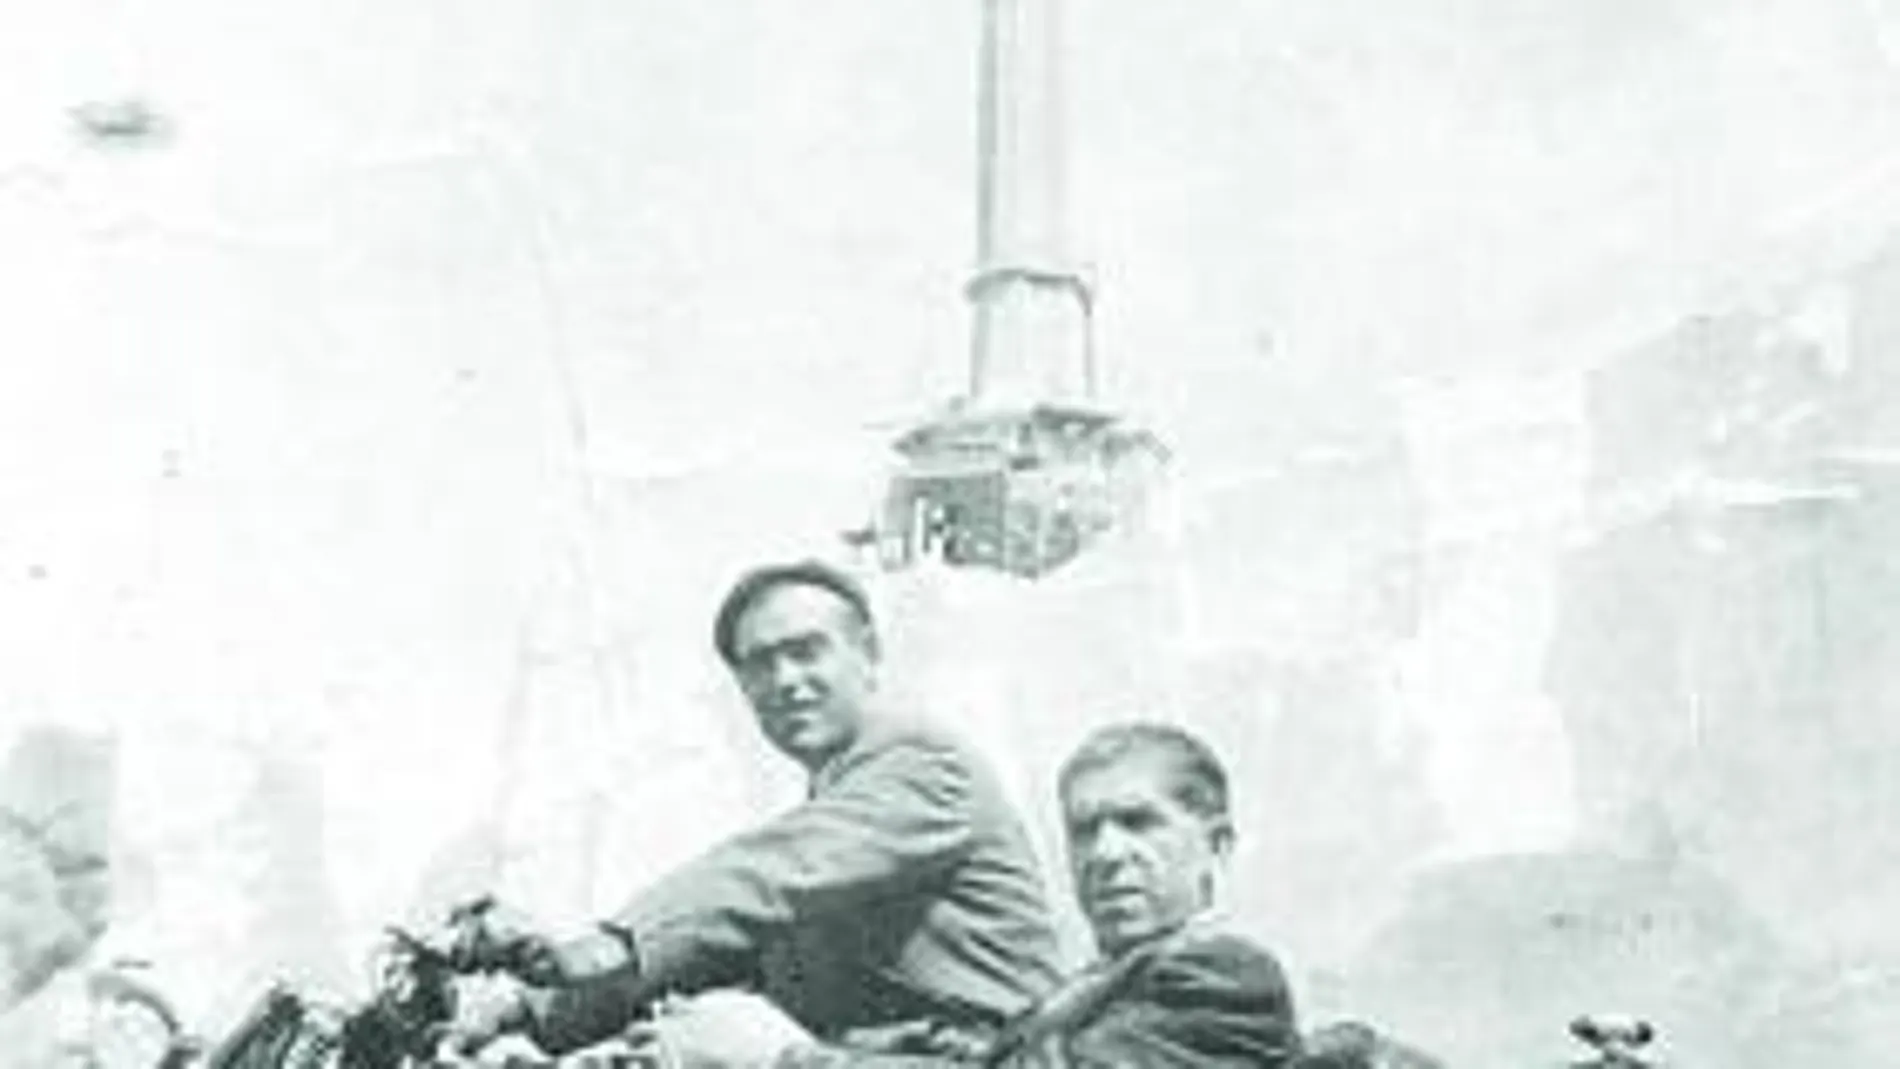 Antonio Clemente y su hermano trabajaron en el Valle